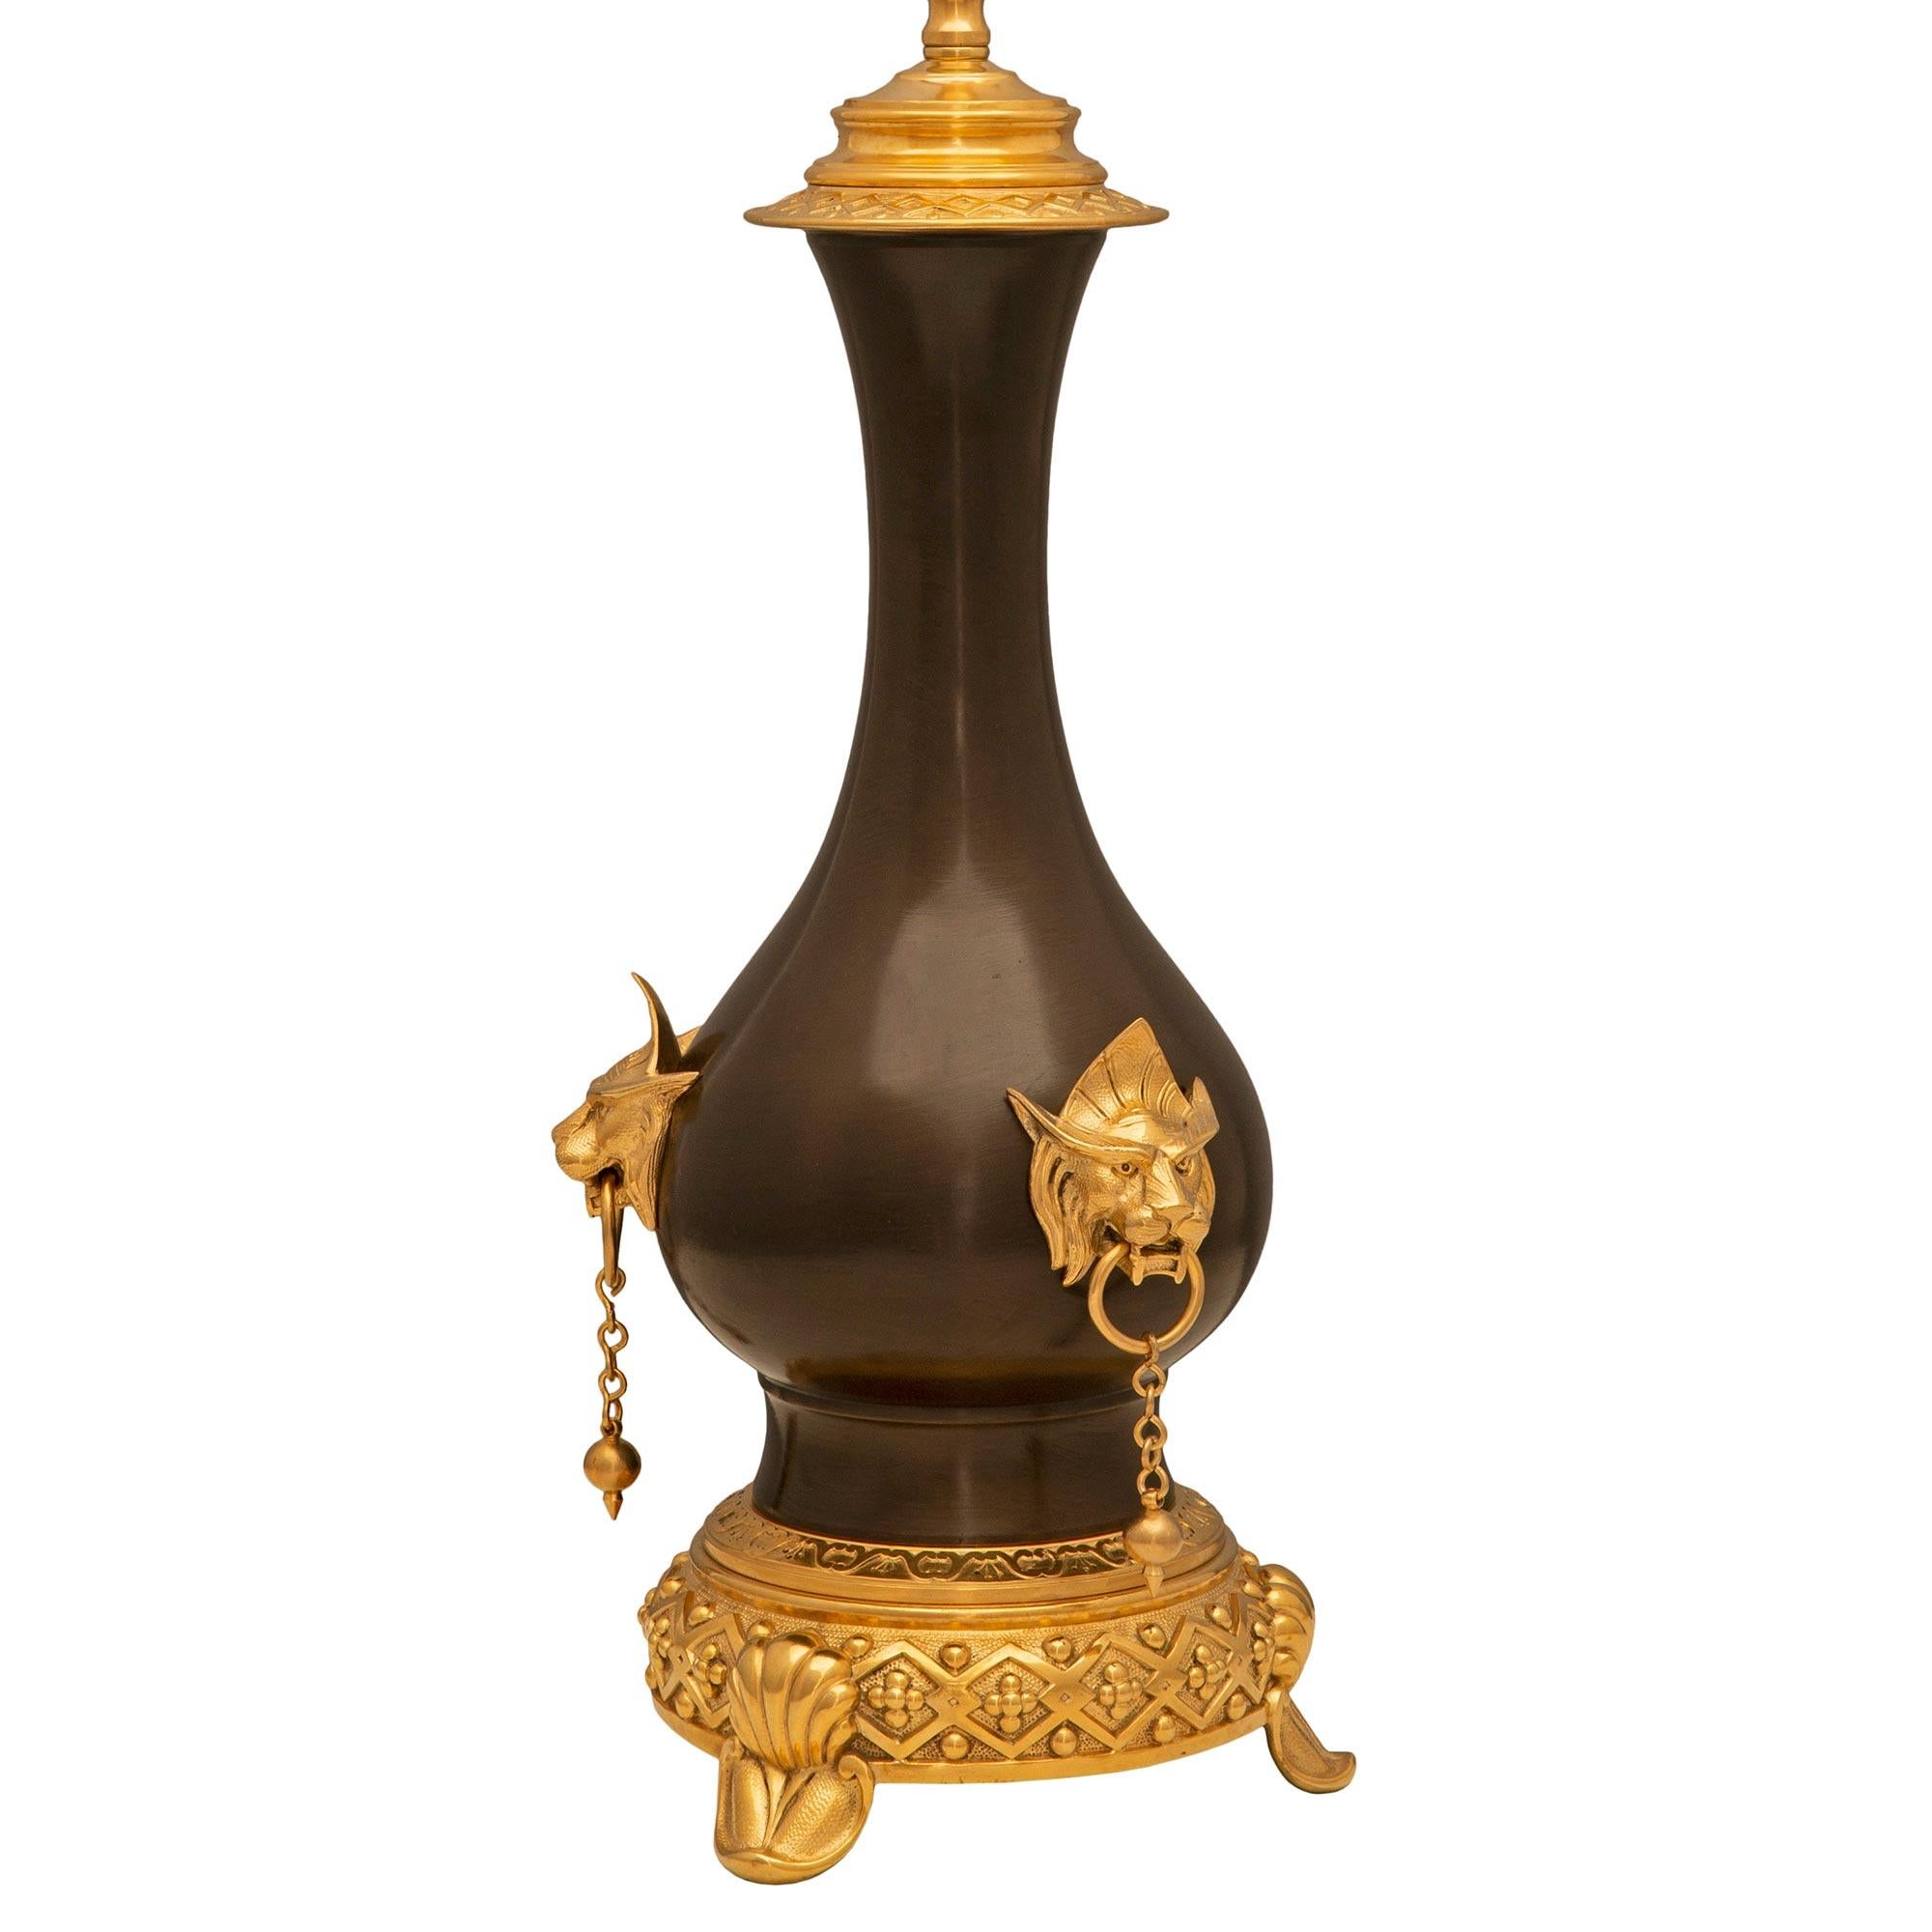 Une remarquable paire de lampes françaises du 19ème siècle de style Renaissance en bronze patiné et bronze doré. Chaque lampe est surélevée par une belle base circulaire avec trois supports en forme de coquillage et un magnifique et unique bandeau